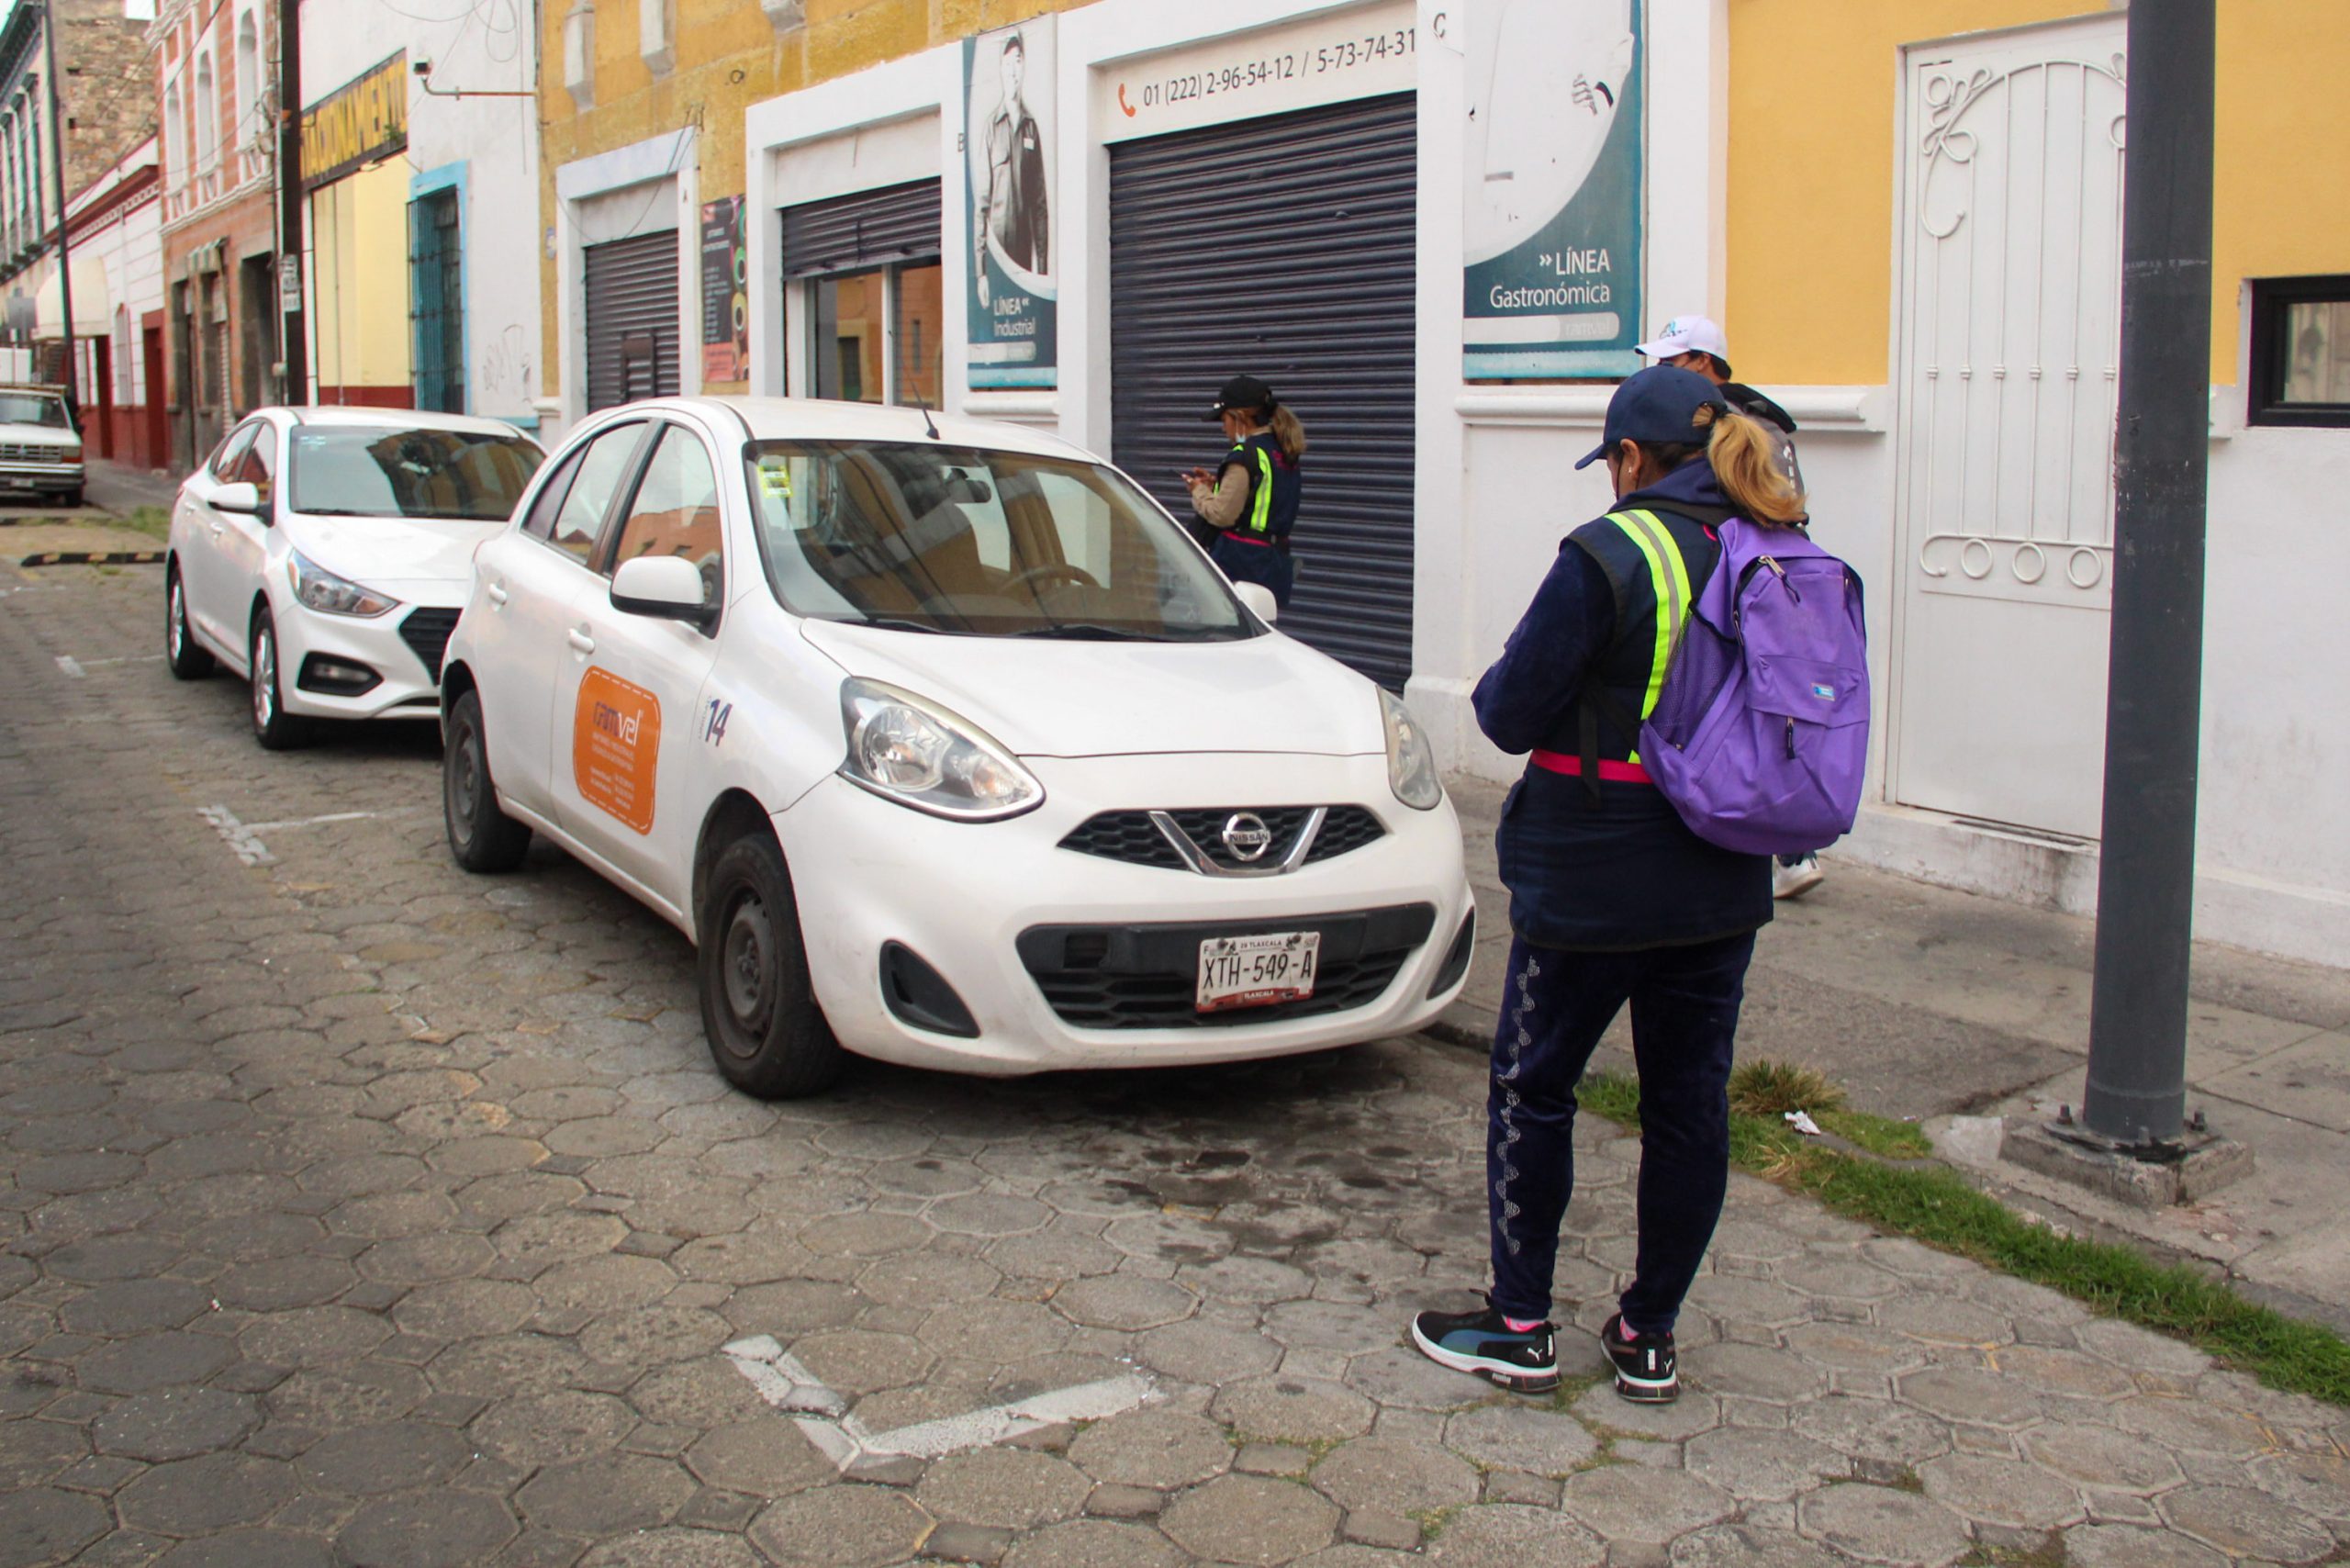 Parquímetros generan 31 mil pesos diarios en una semana al Ayuntamiento